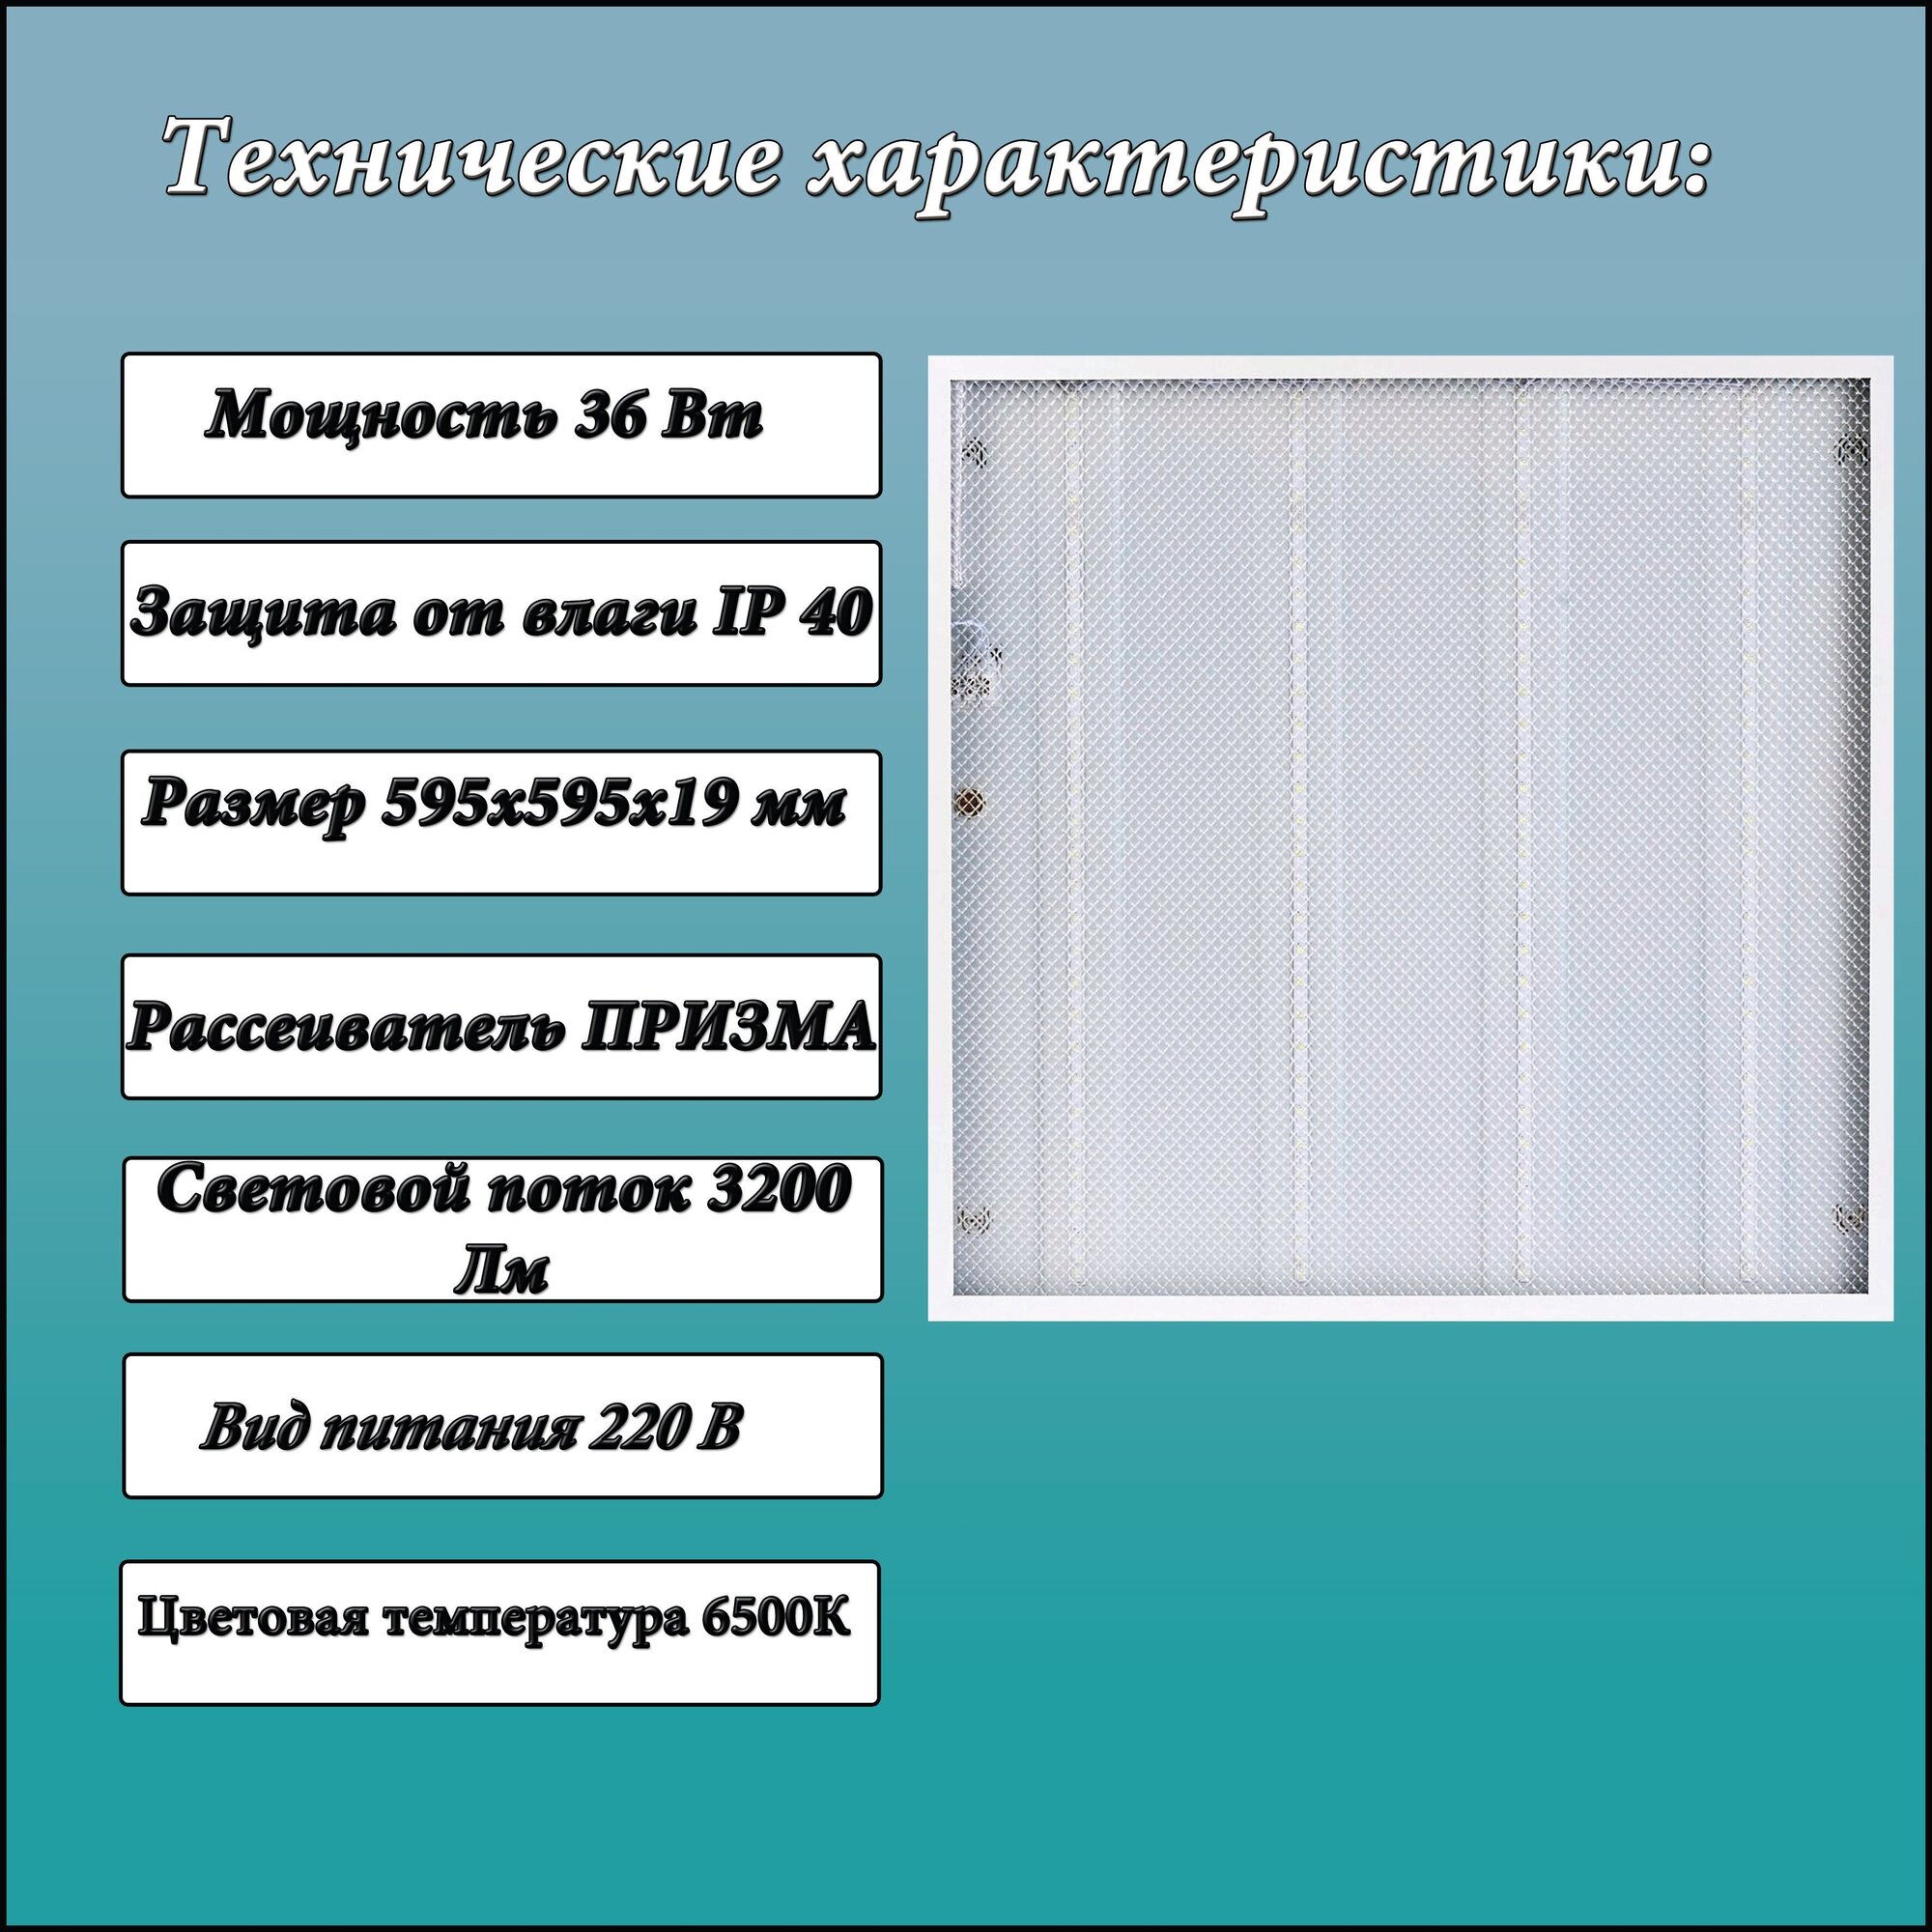 Светодиодная панель СириусА UNI-595-595-36W , LED, 36Вт, 6500К, холодный белый, цвет корпуса белый 1 шт.